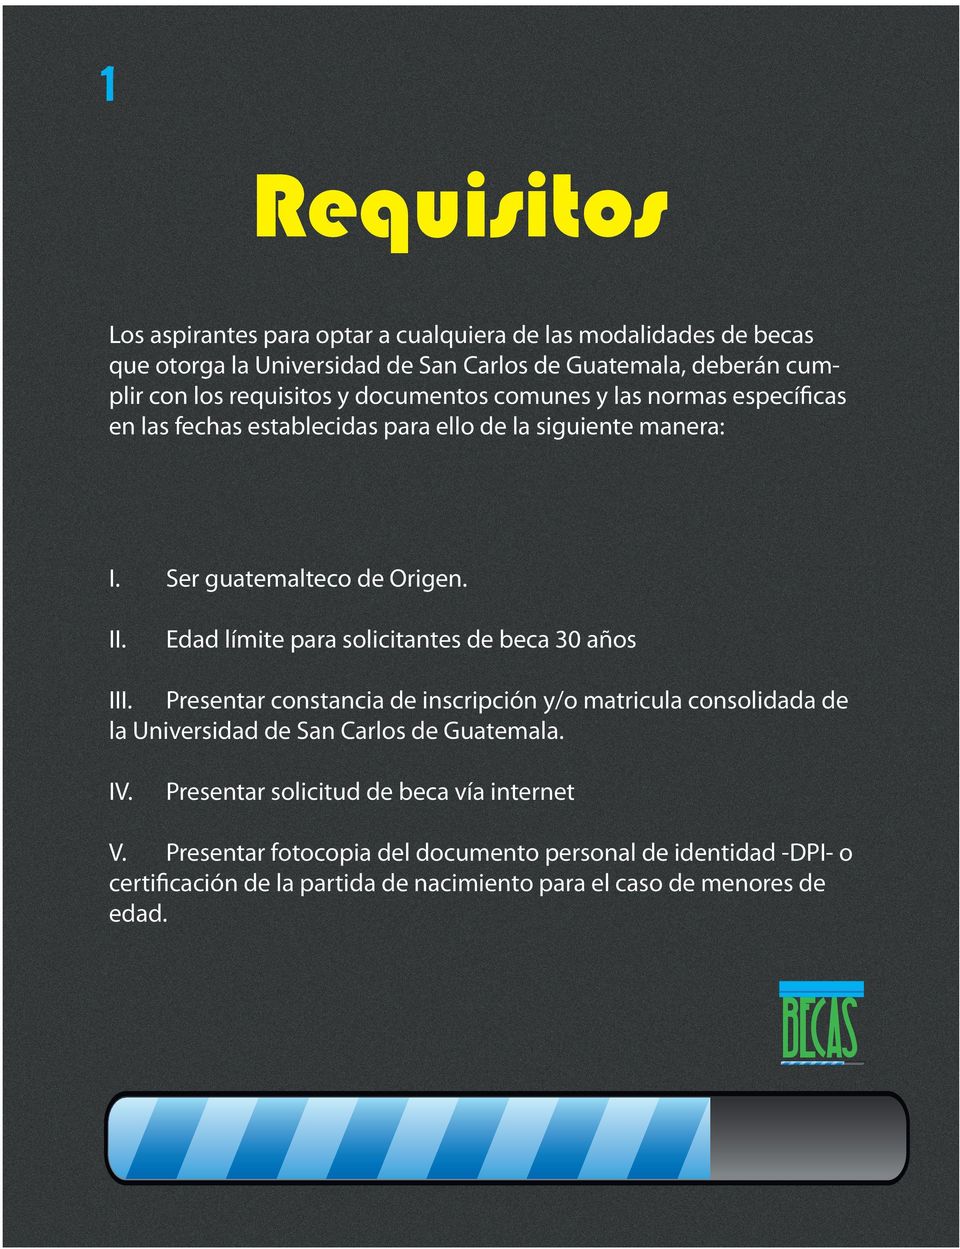 I Edad límite para solicitantes de beca 30 años II Presentar constancia de inscripción y/o matricula consolidada de la Universidad de San Carlos de Guatemala. IV.